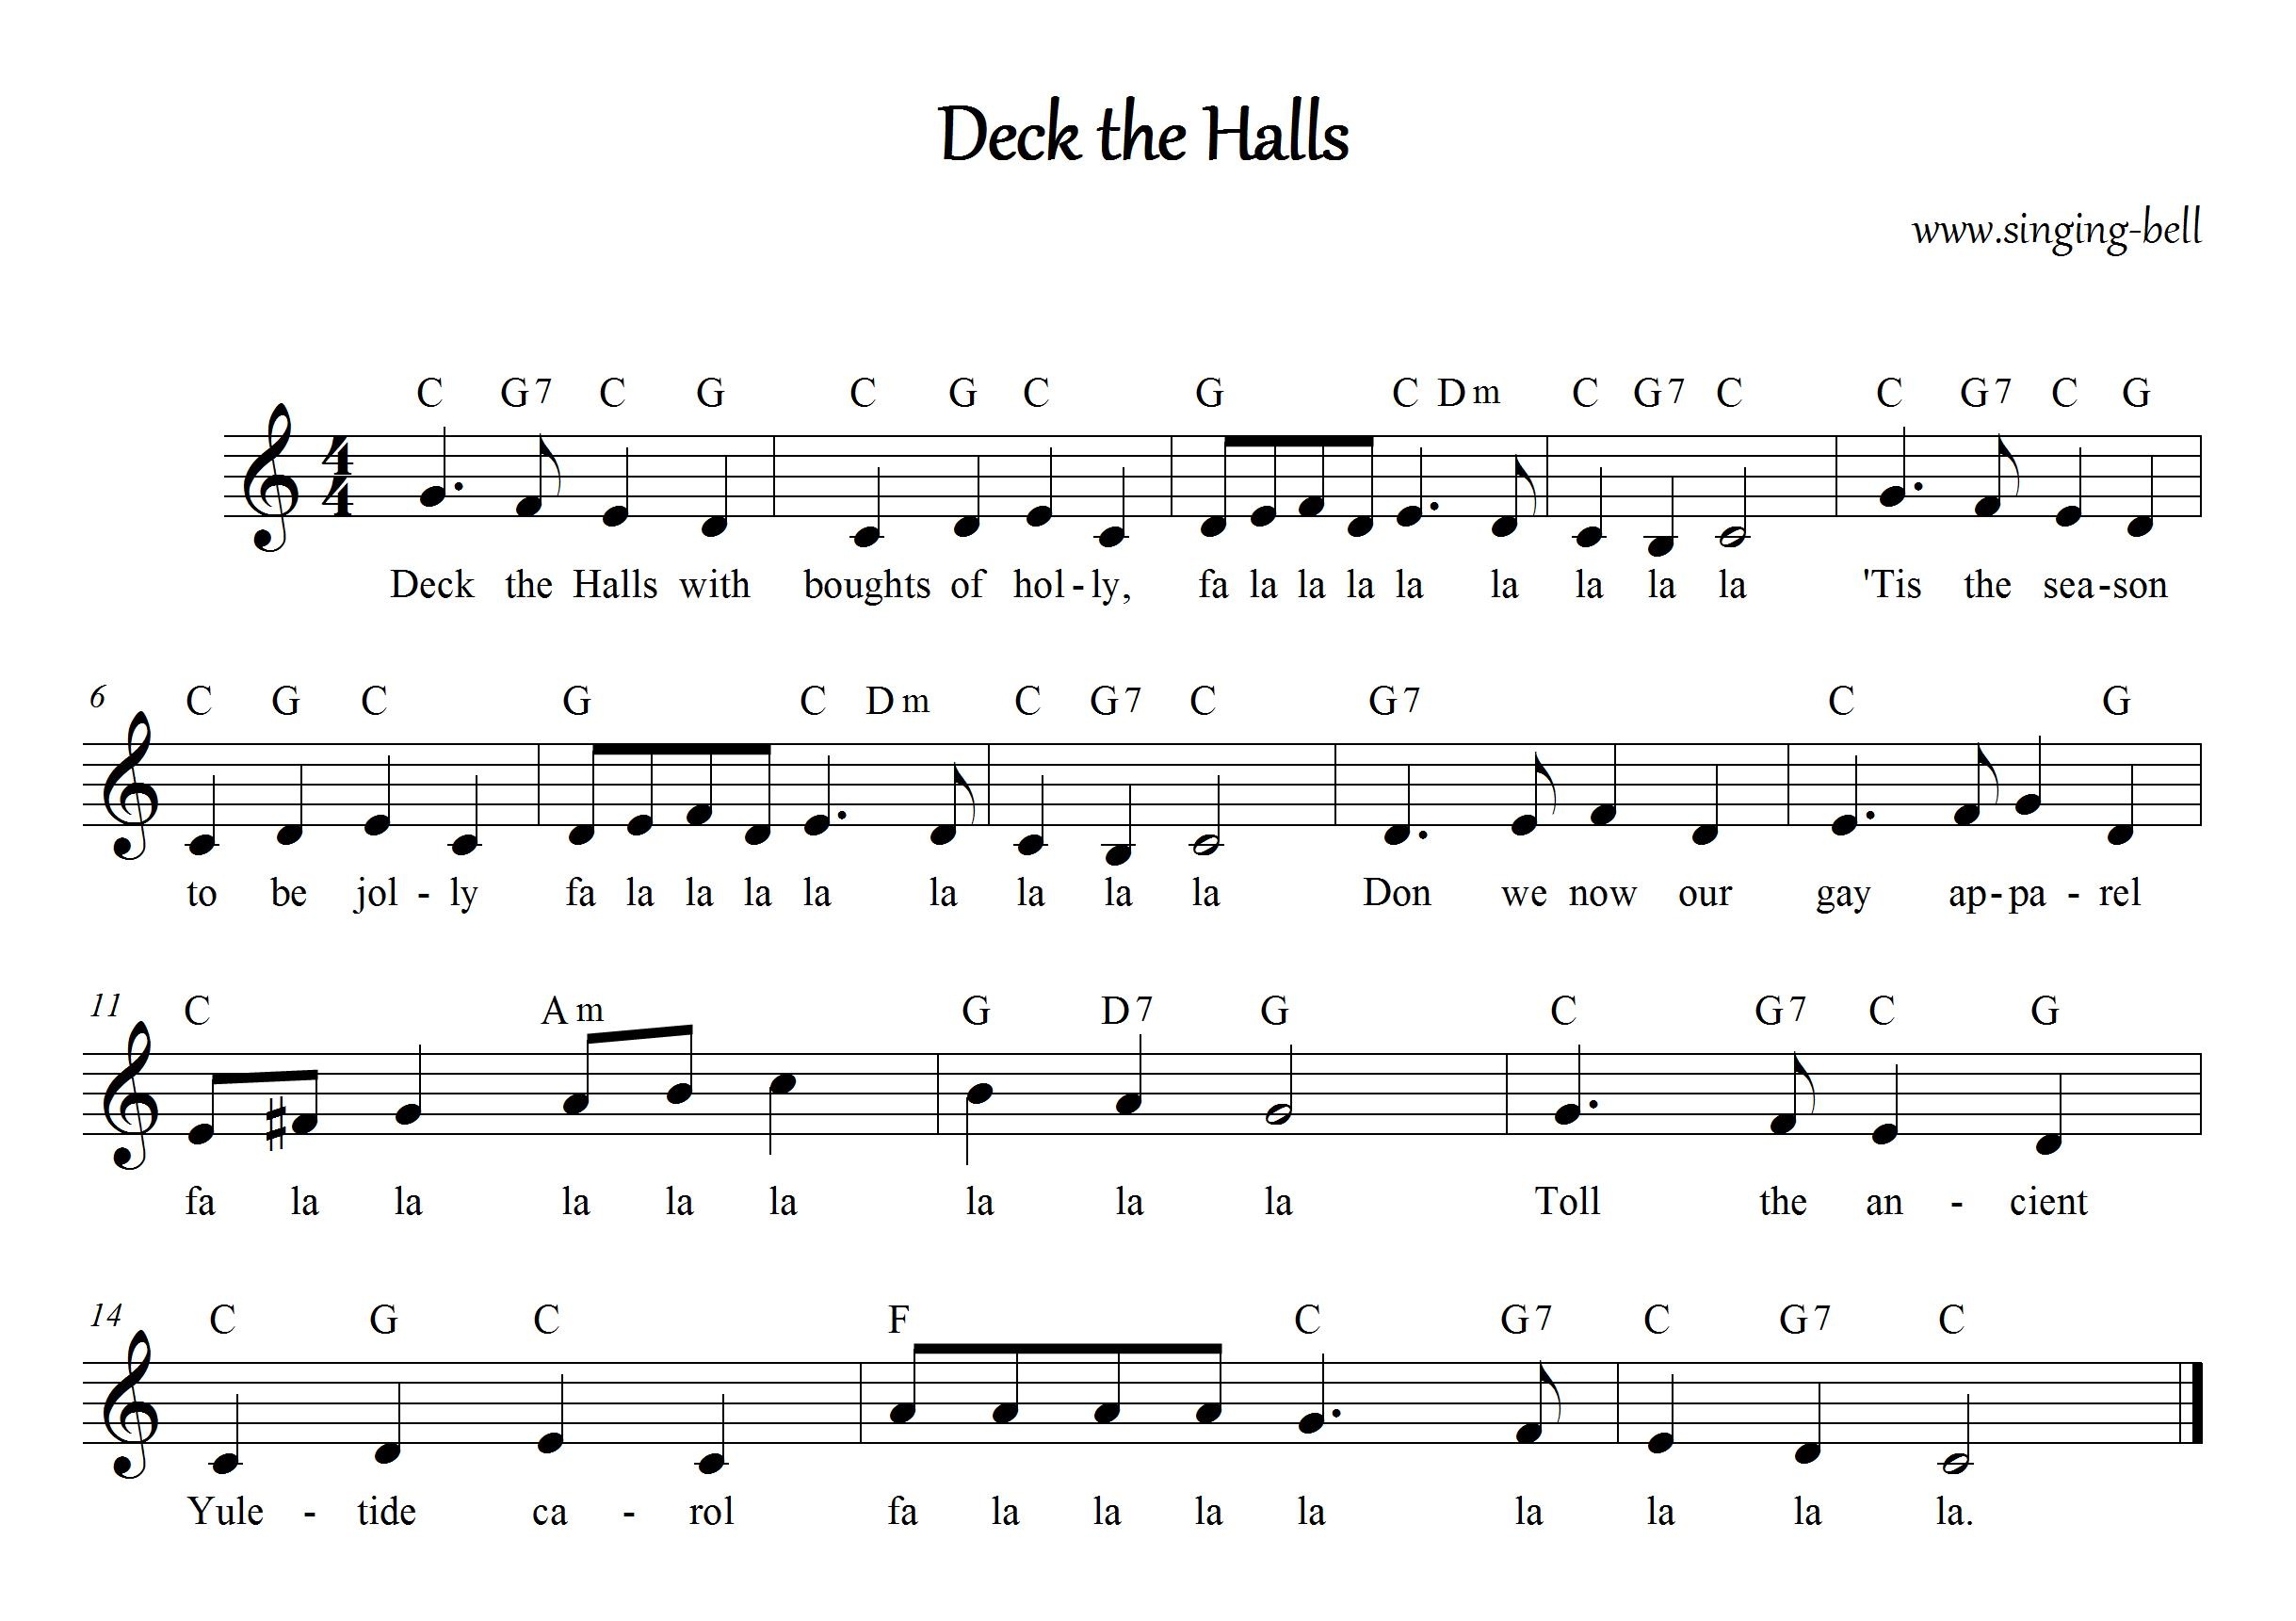 Christmas Carol Sheet Music | 30 Free Scores To Download - Free Christmas Sheet Music For Keyboard Printable